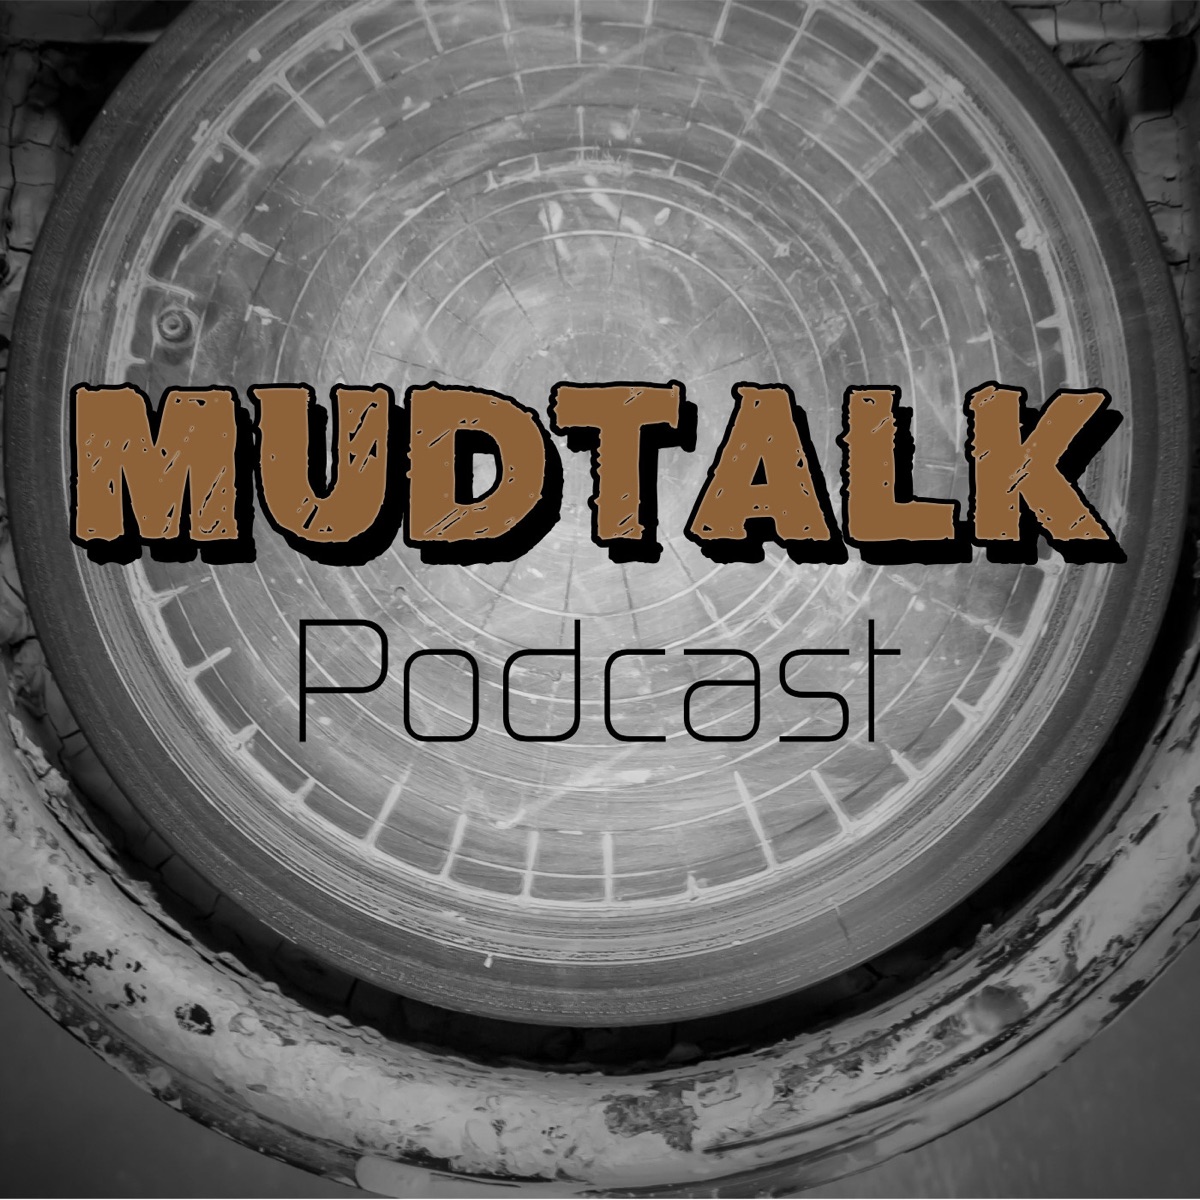 MudTalk Podcast - Pottery, Ceramics, Business - Podcast – Podtail